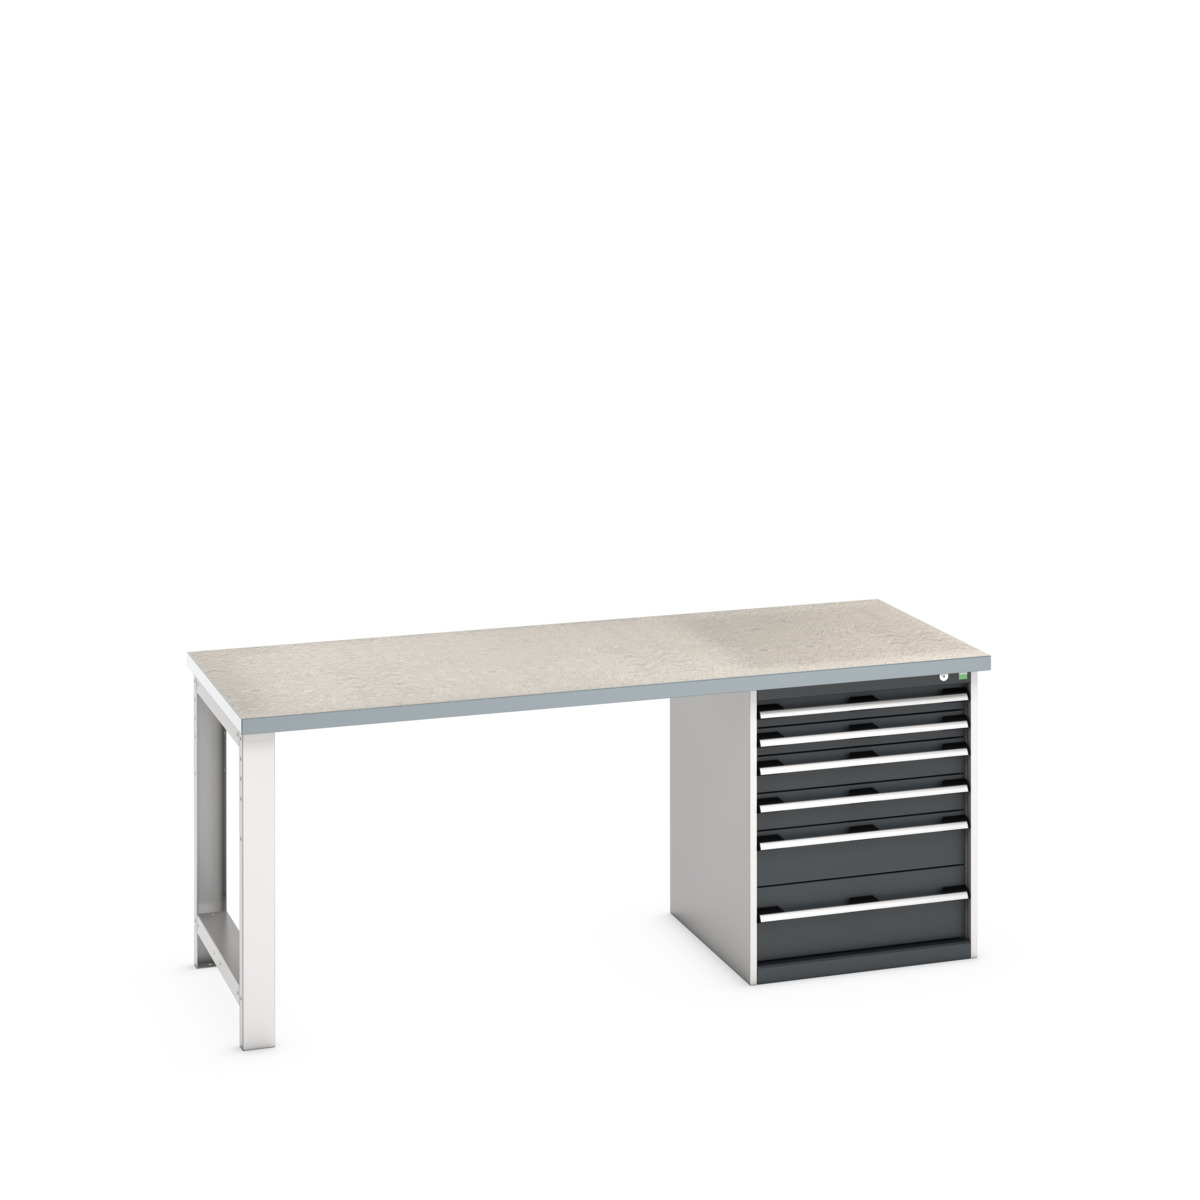 41004116.19V - cubio pedestal bench (lino)